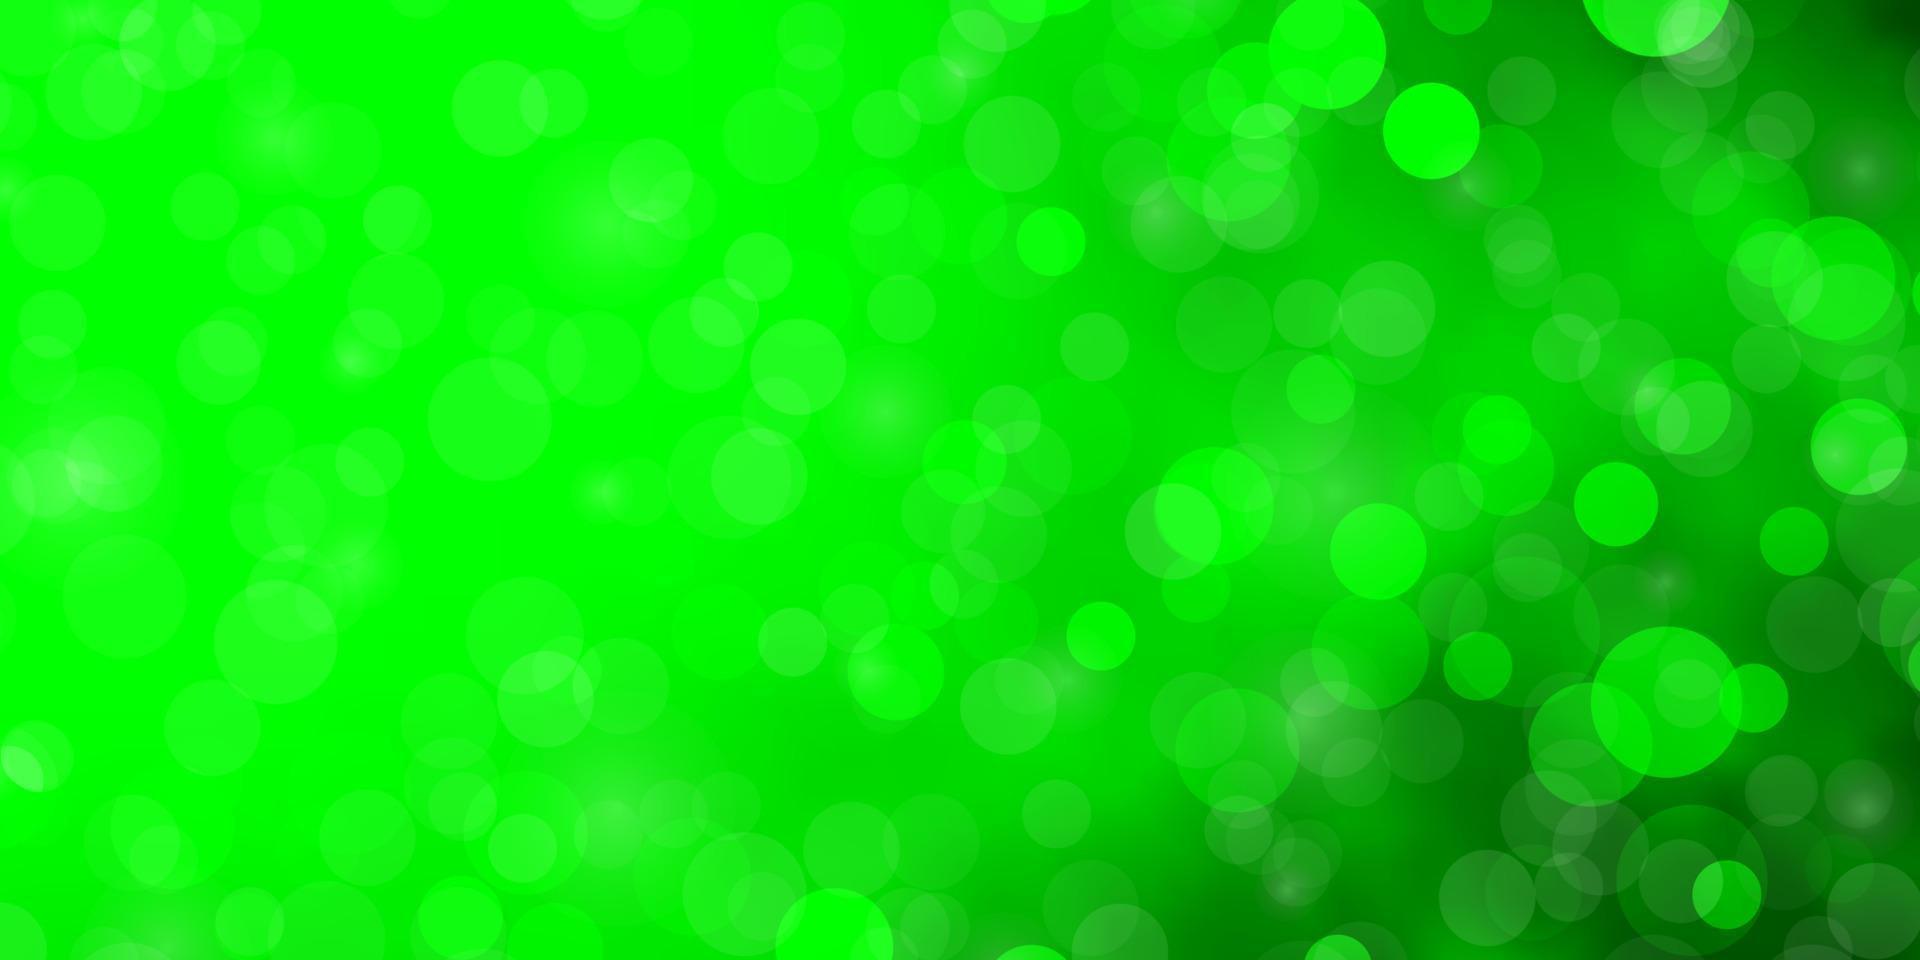 ljusgrön vektorbakgrund med cirklar. vektor